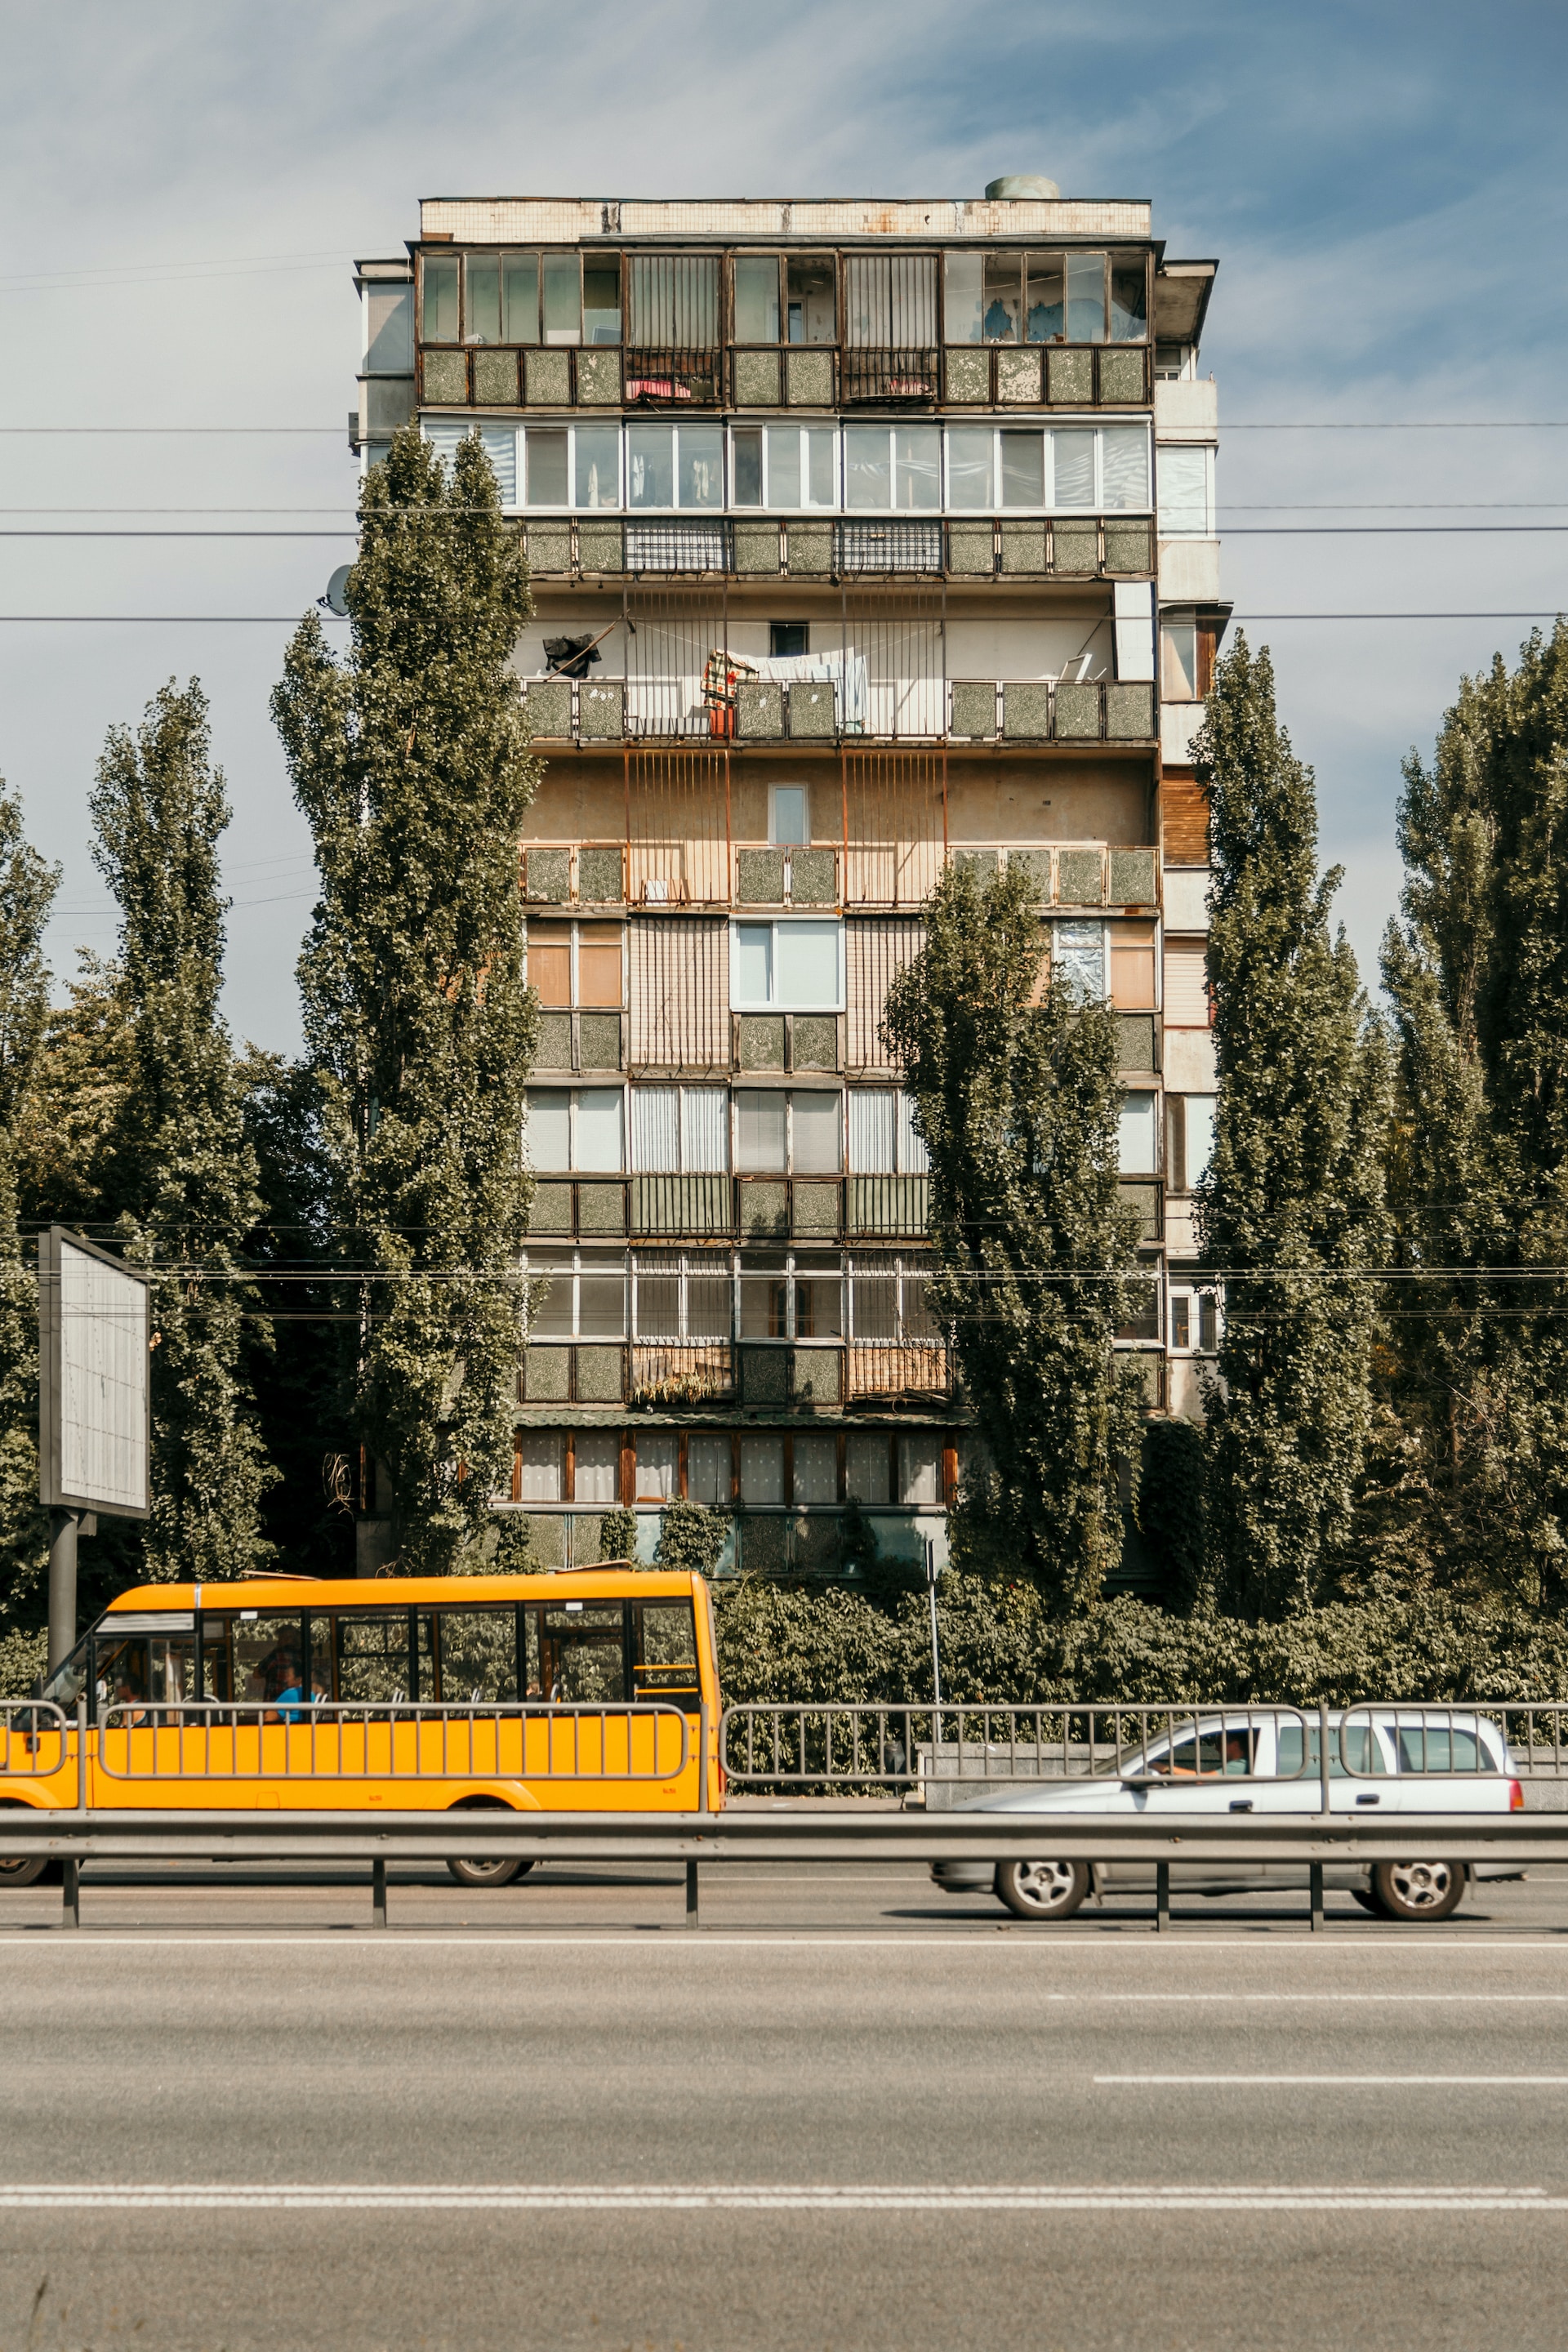 Безкоштовний проїзд, маршрутки й трамваї. Говоримо з "Пасажирами Києва" про транспорт столиці